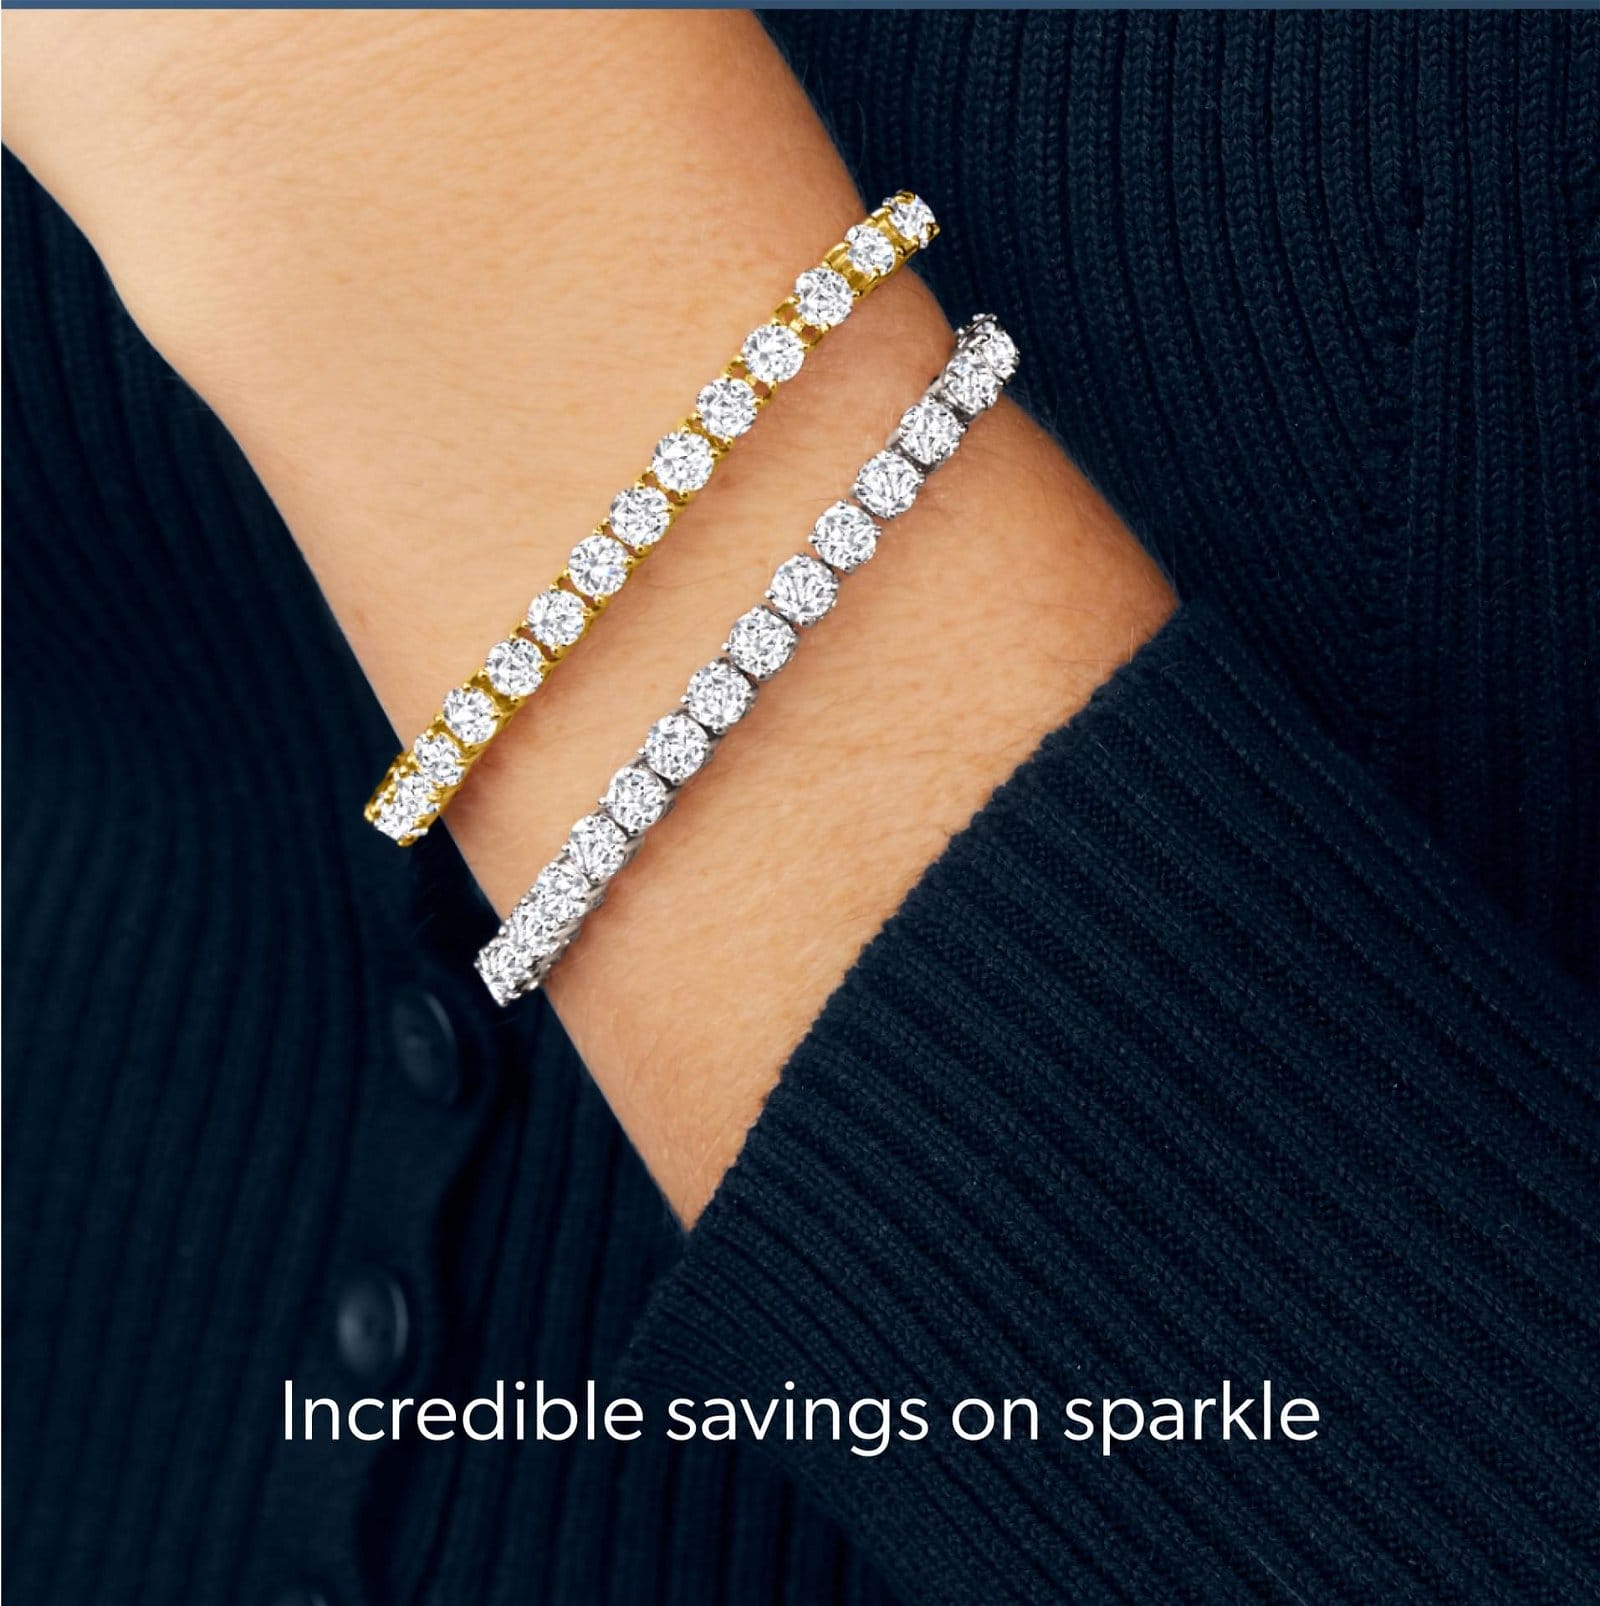 Incredible savings on sparkle